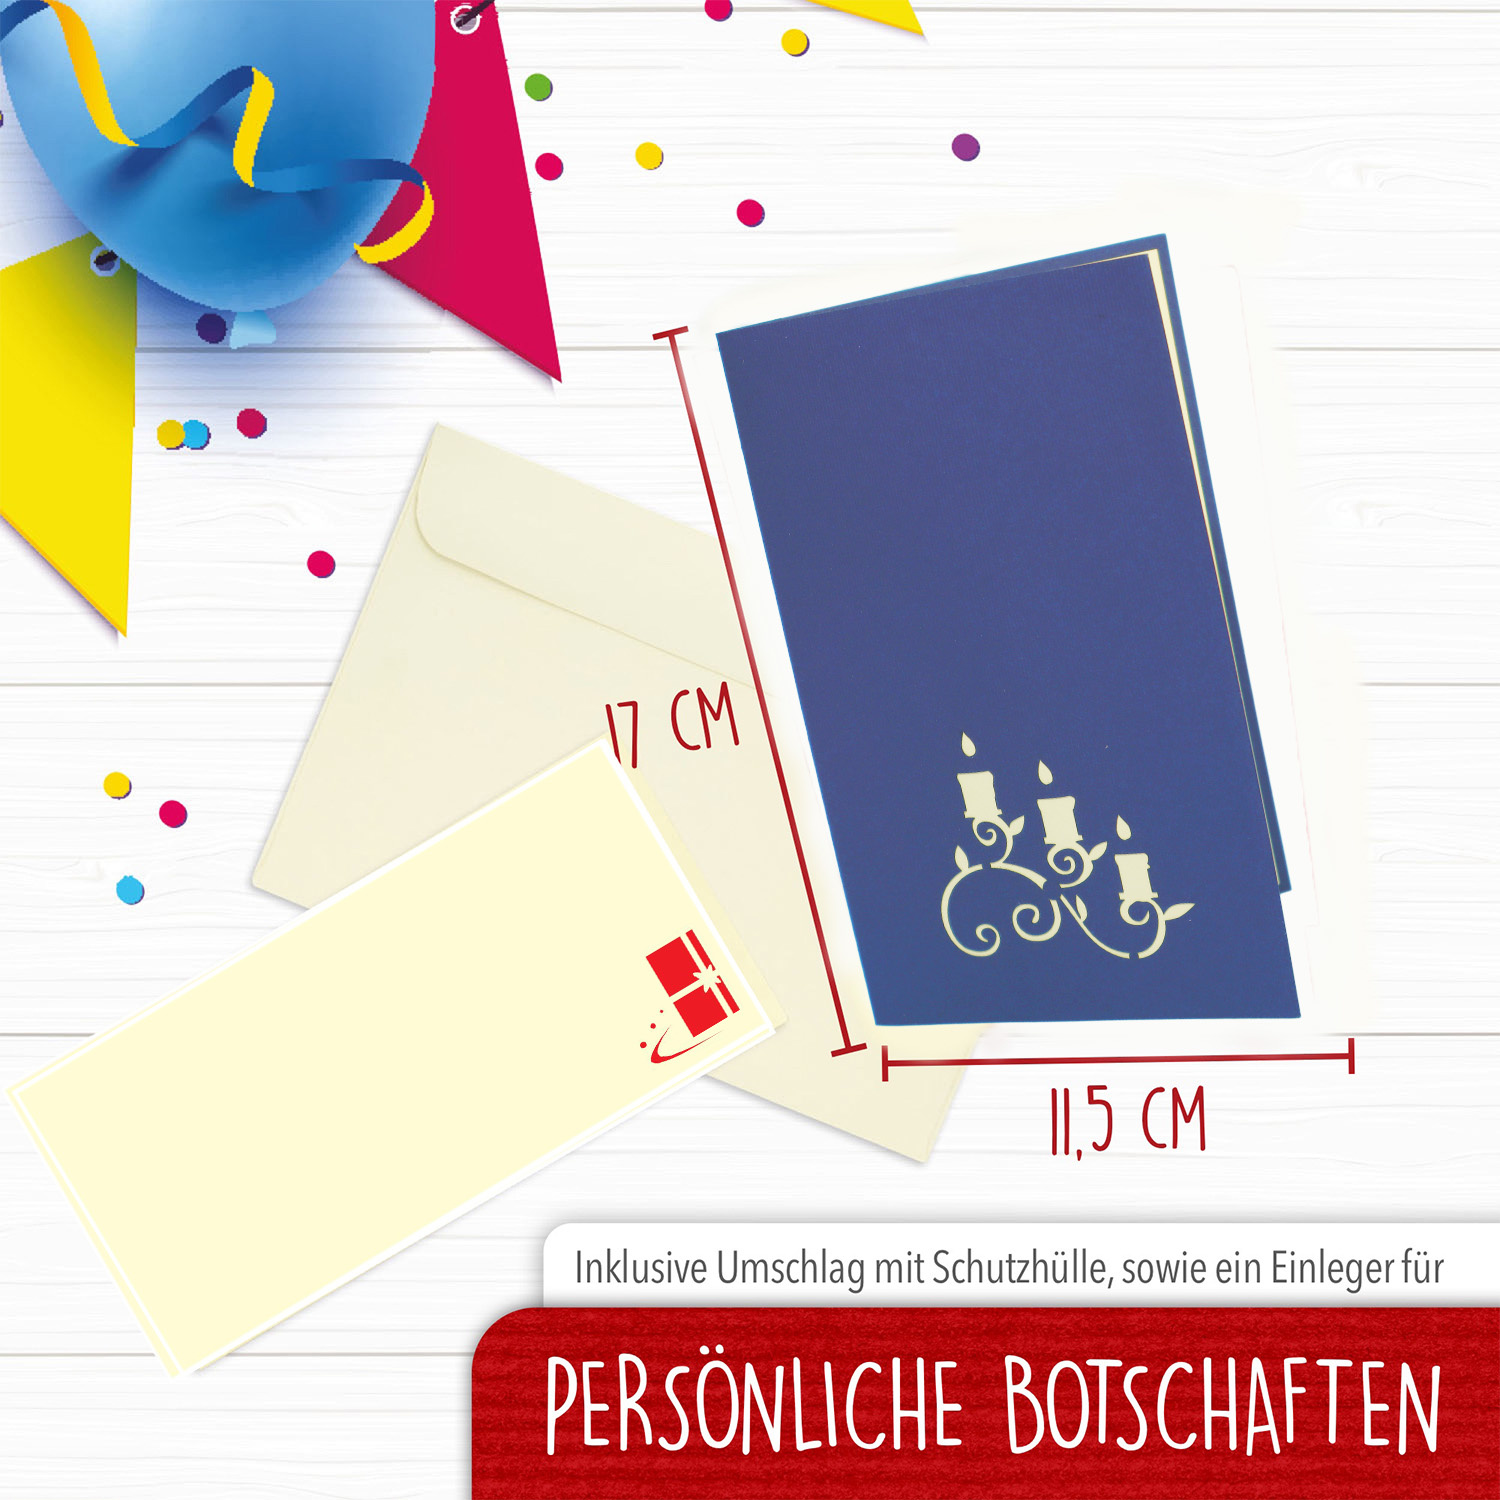 LINPOPUP Pop Up 3D Card, Birthday Card, Congratulations Card, Voucher, Dinner, blue, LINPopUp®, N127